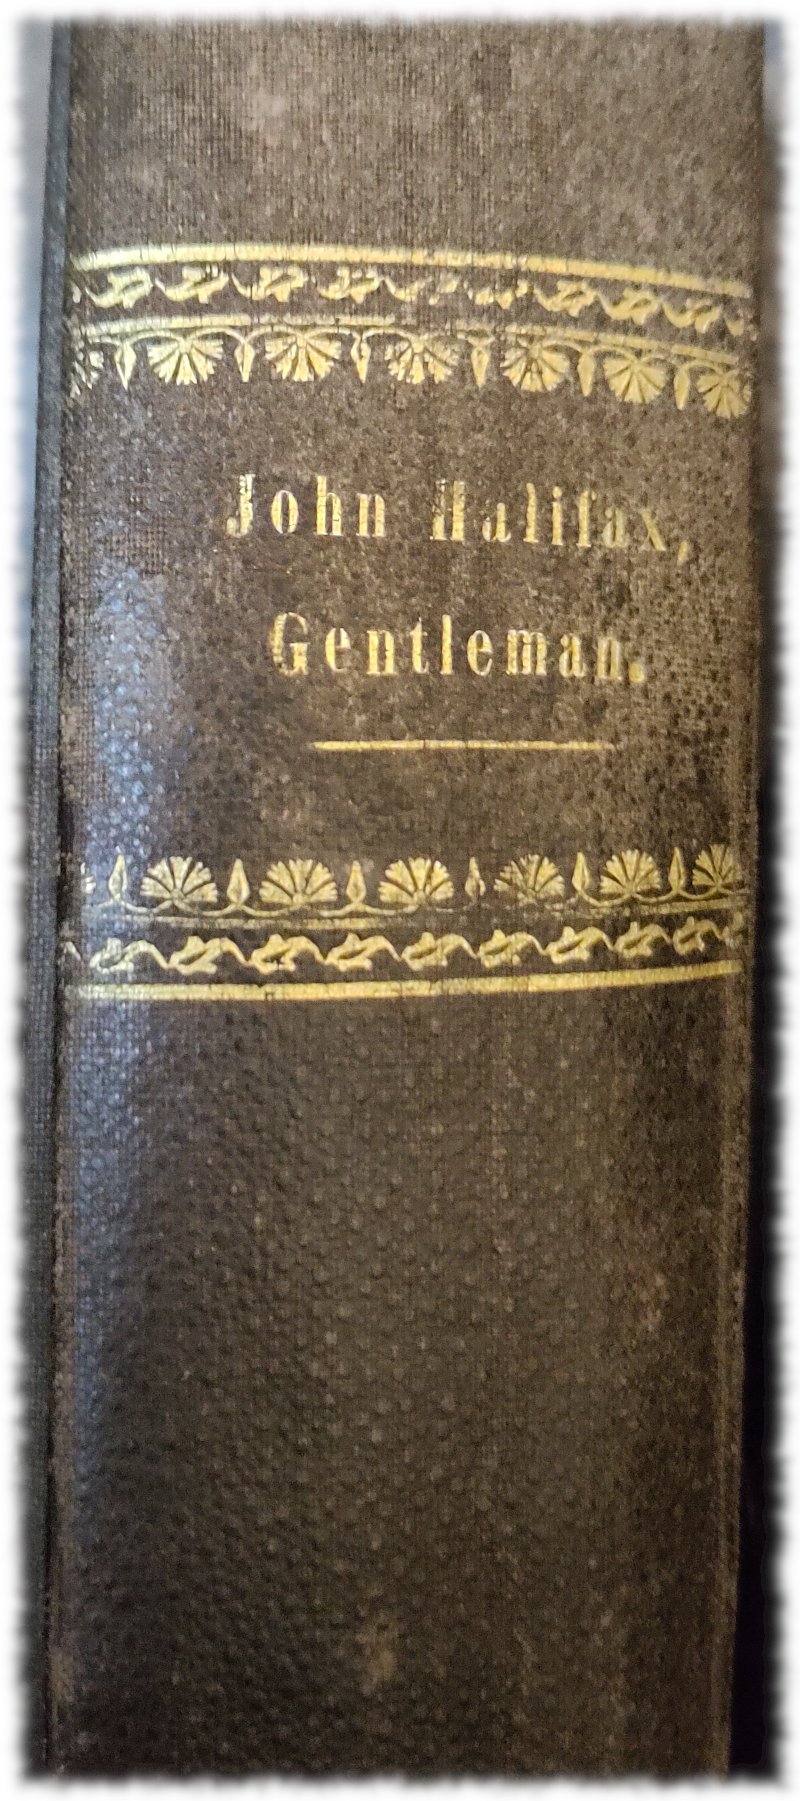 Buchrcken von John Halifax, Gentleman, Goldprgung auf sowas wie Leder